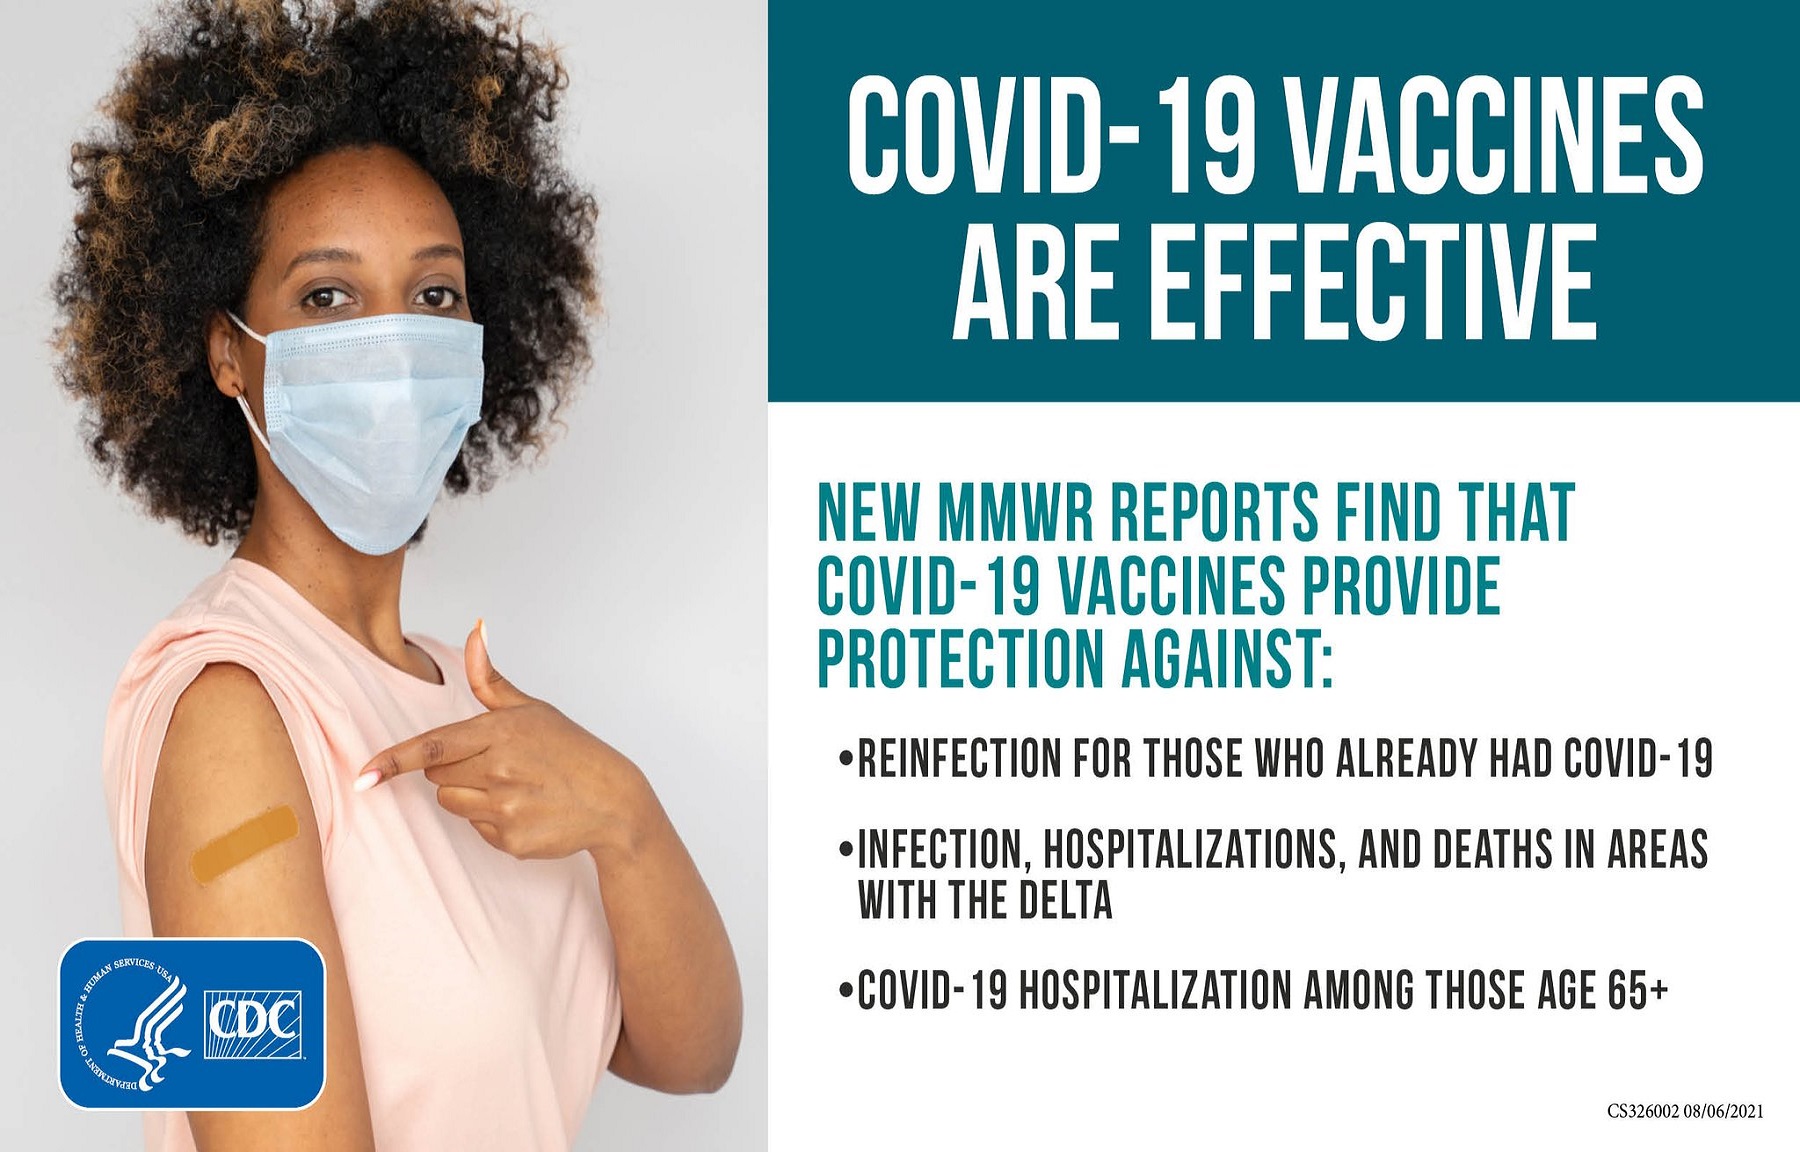 ΗΠΑ CDC: Η προηγούμενη μόλυνση από την COVID-19 δεν προστατεύει τόσο καλά από την επαναμόλυνση όσο το εμβόλιο